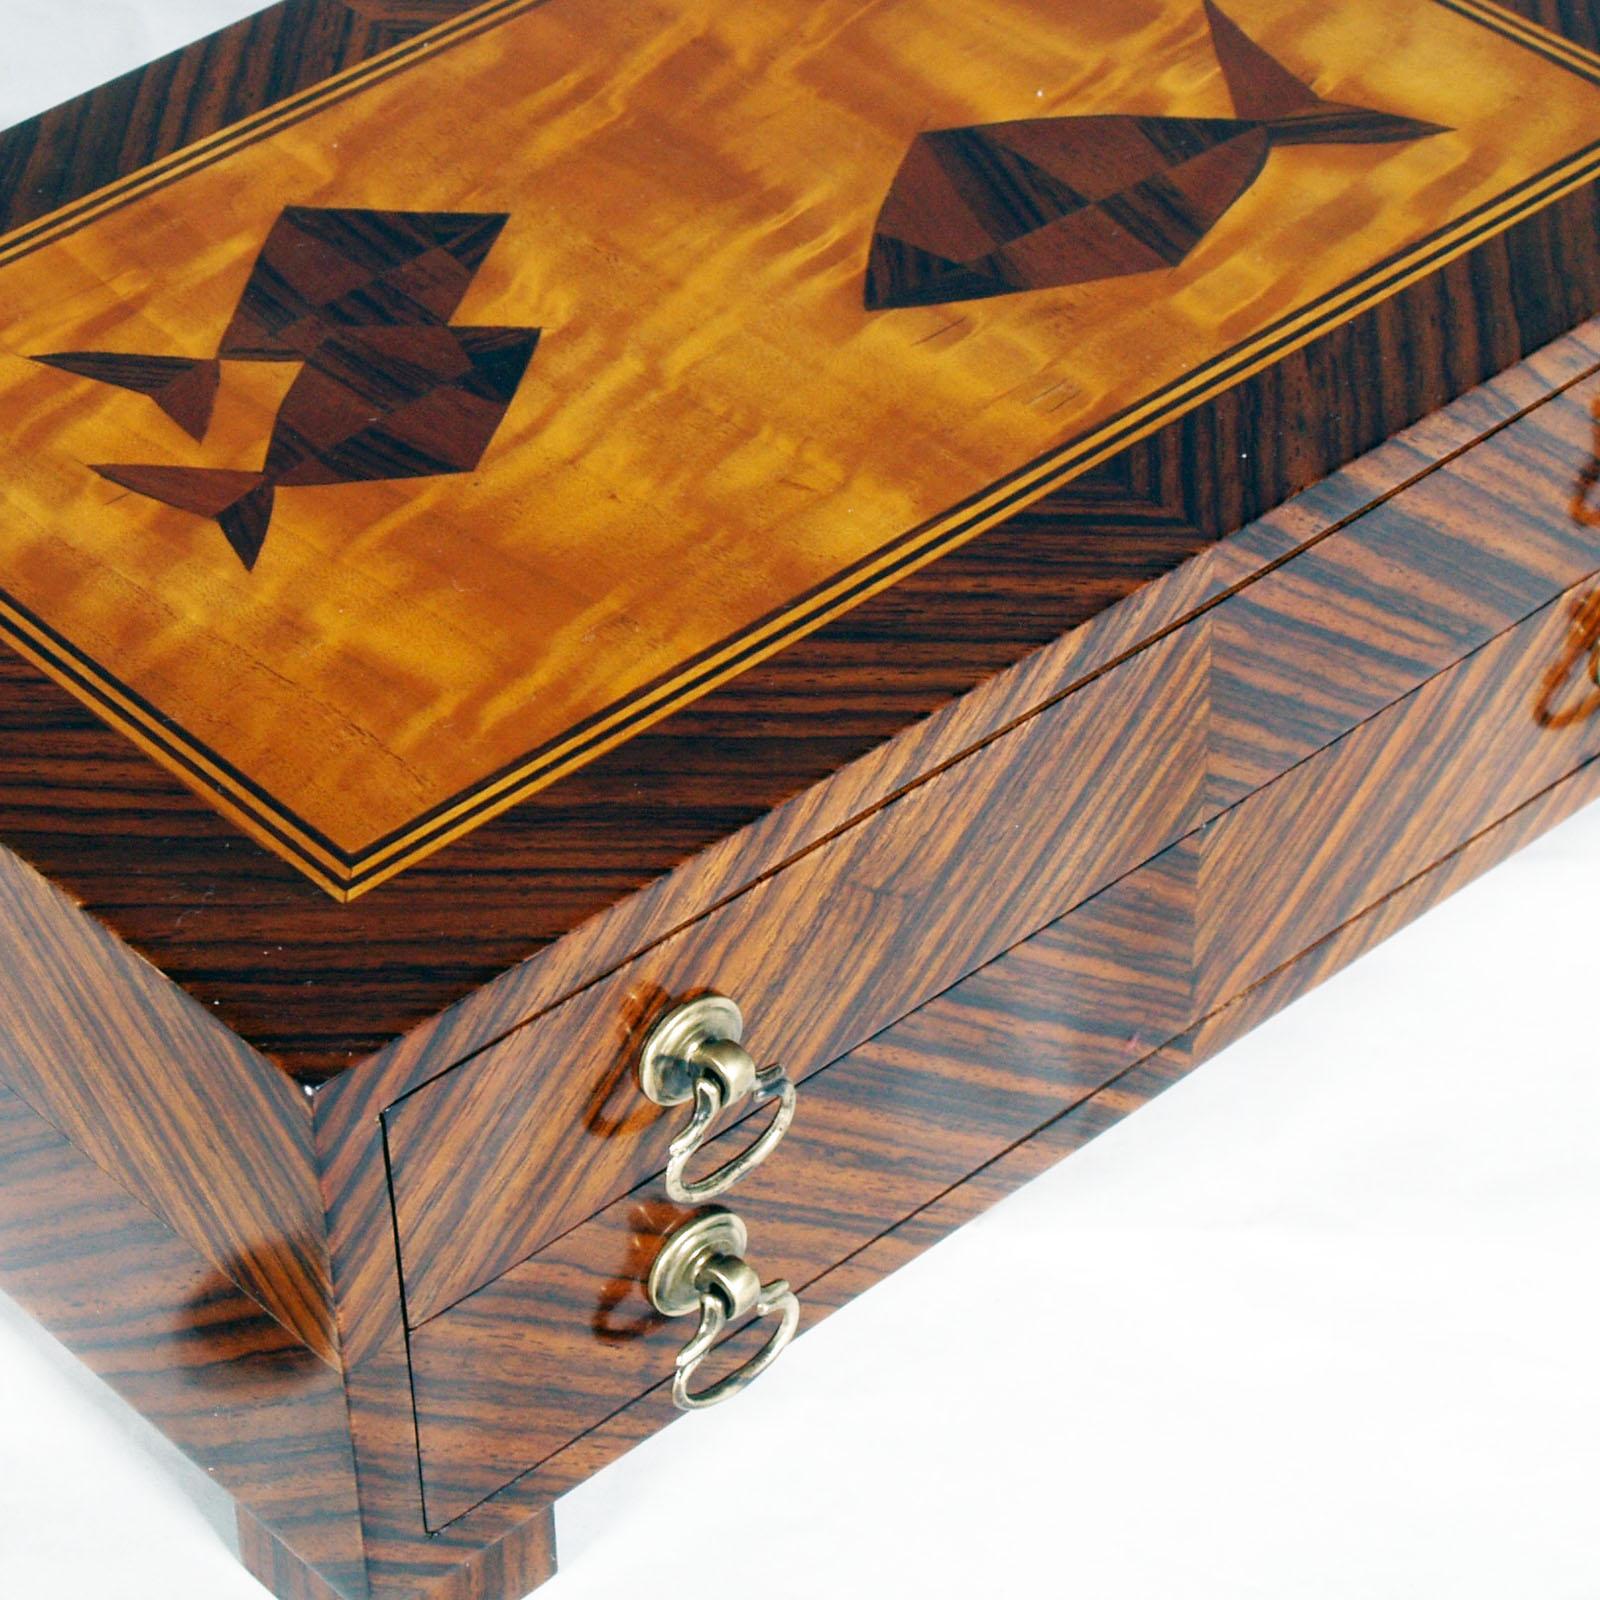 Italian Early 20th Century Wooden Box Macassar Ebony venered for Jewelry Cantù atributet